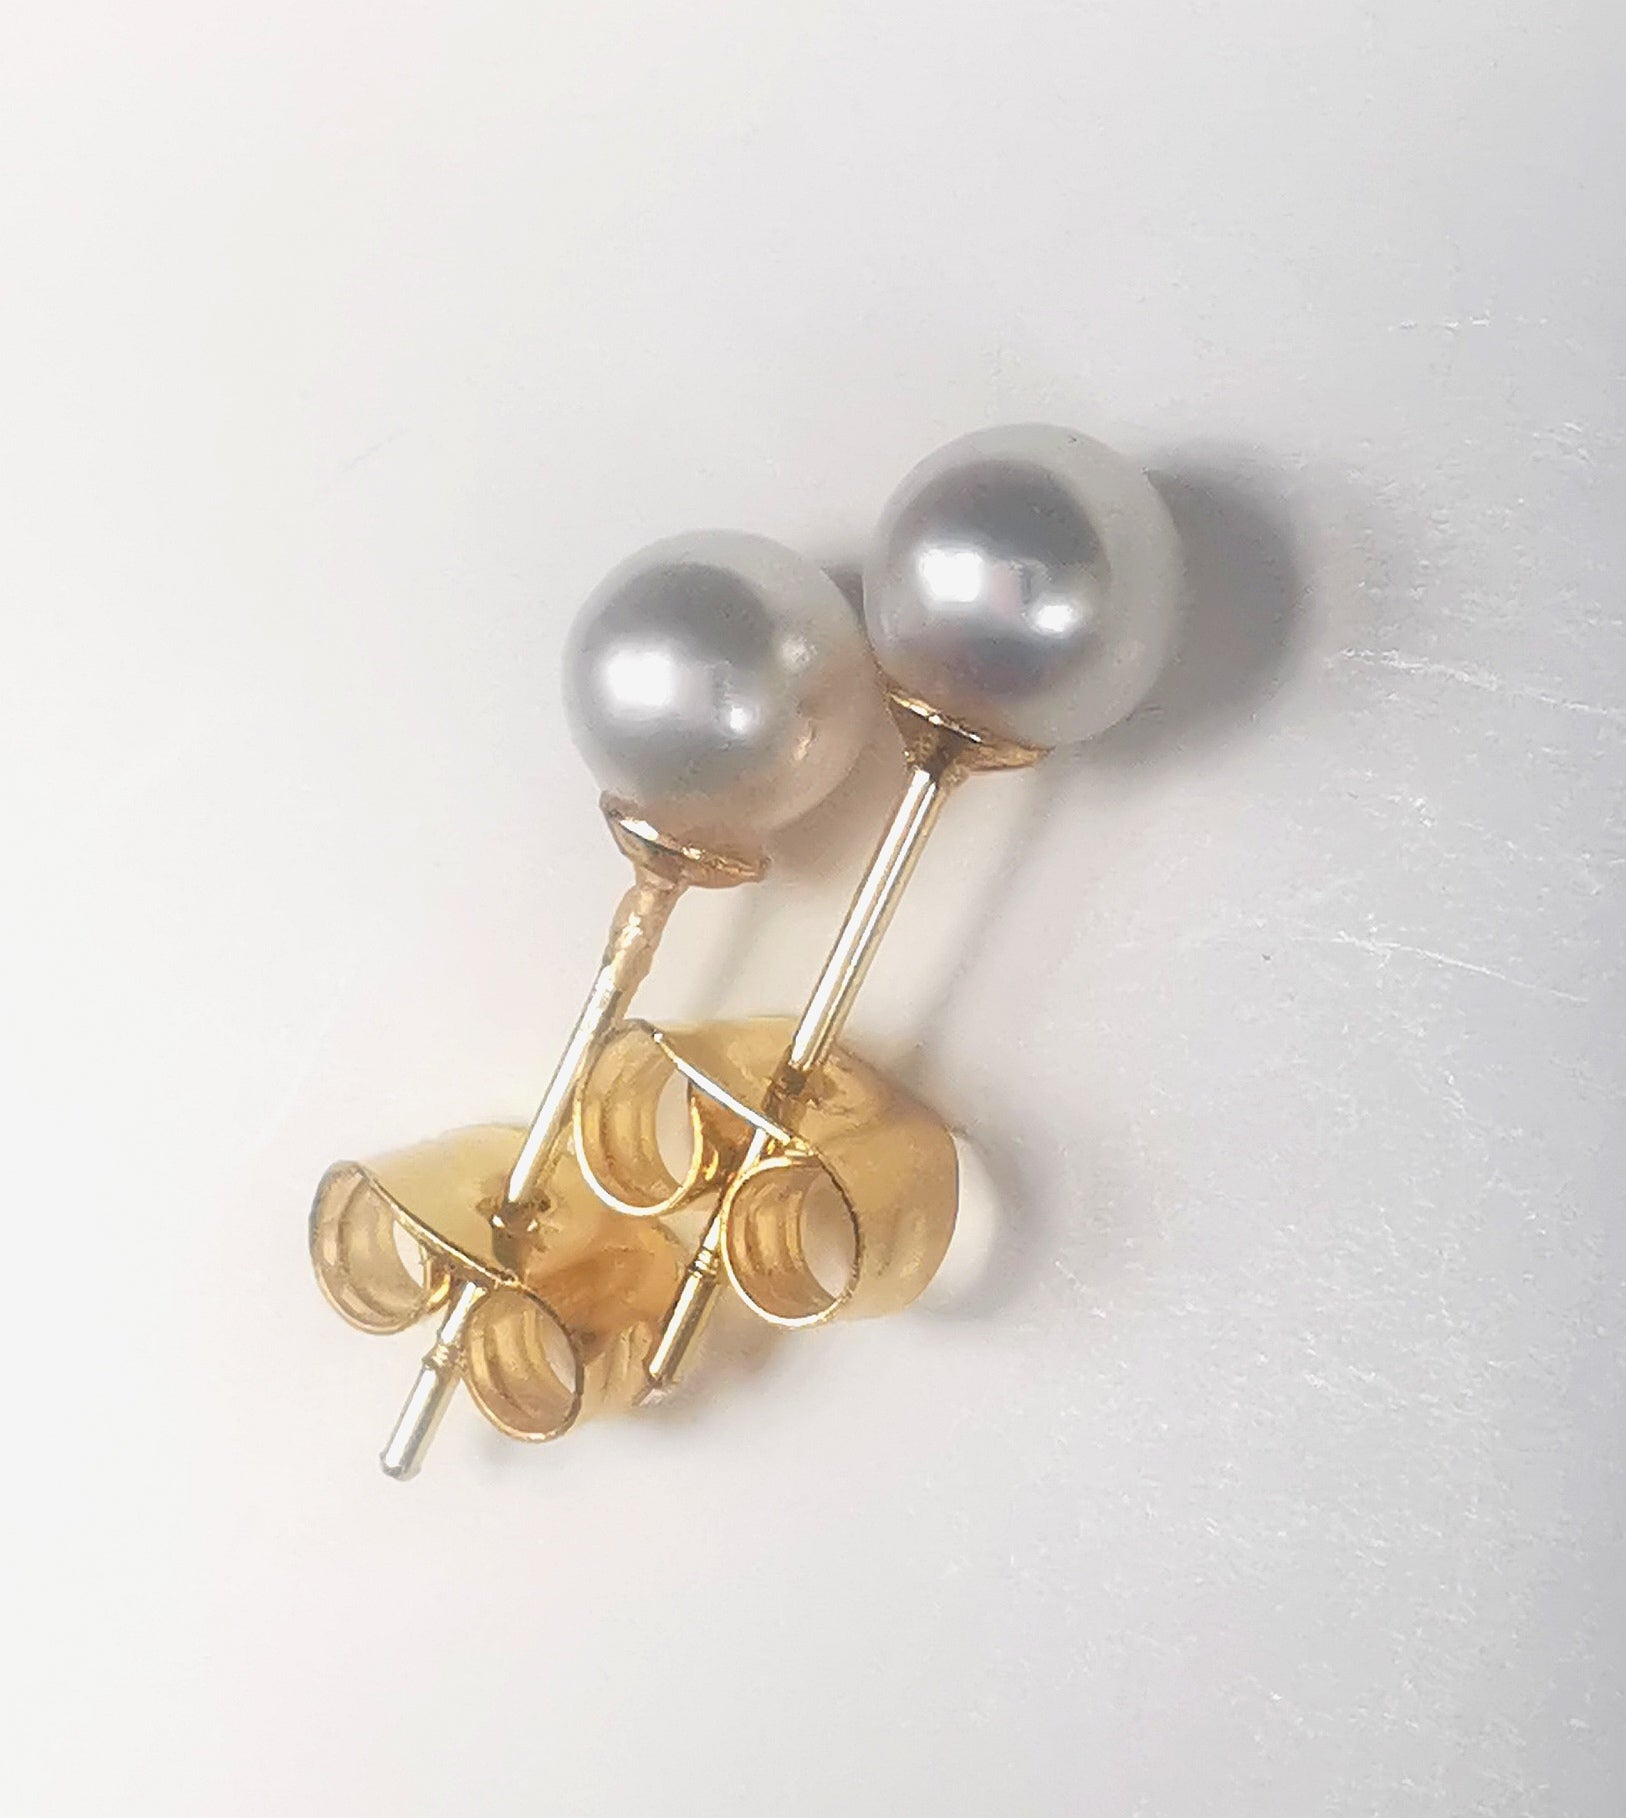 Boucles d'oreilles perles de culture blanches rondes 5mm montées sur clous plaqués or. Présentées cote à cote, perles en haut, les deux décalées vers la droite, sur fond blanc. Vue de dessus en très gros plan.